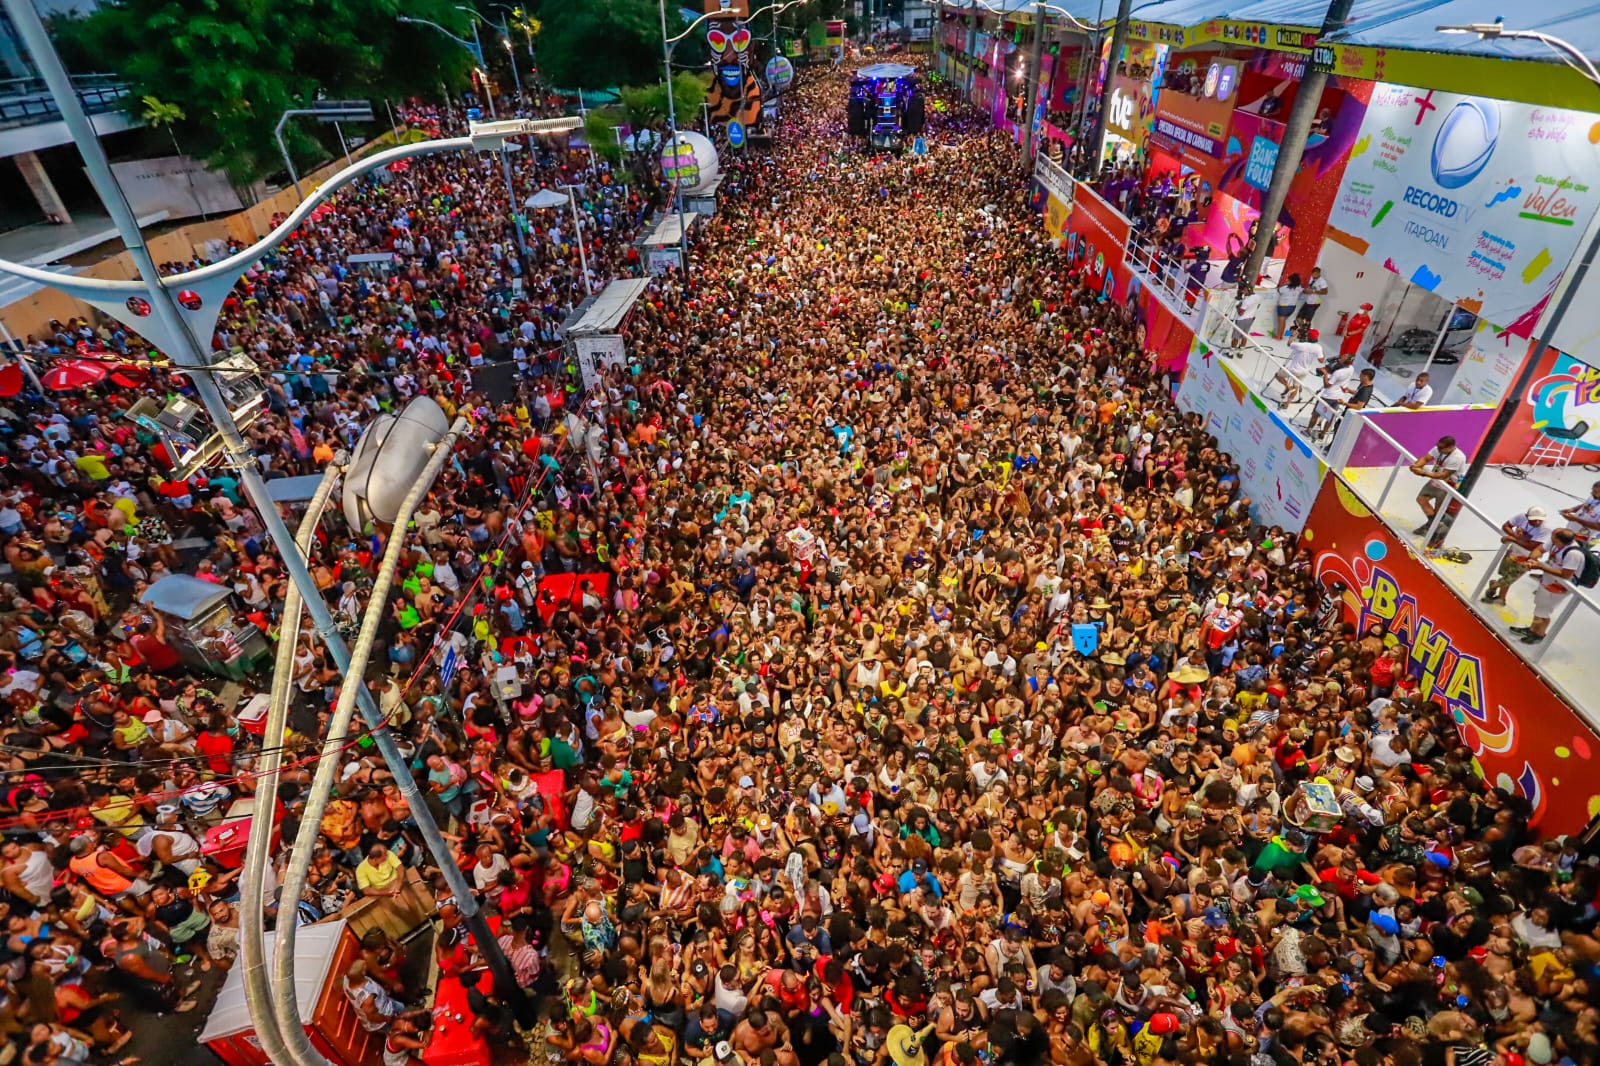 Marcado pela diversidade, Carnaval de Salvador atrai turistas do Brasil e  do mundo